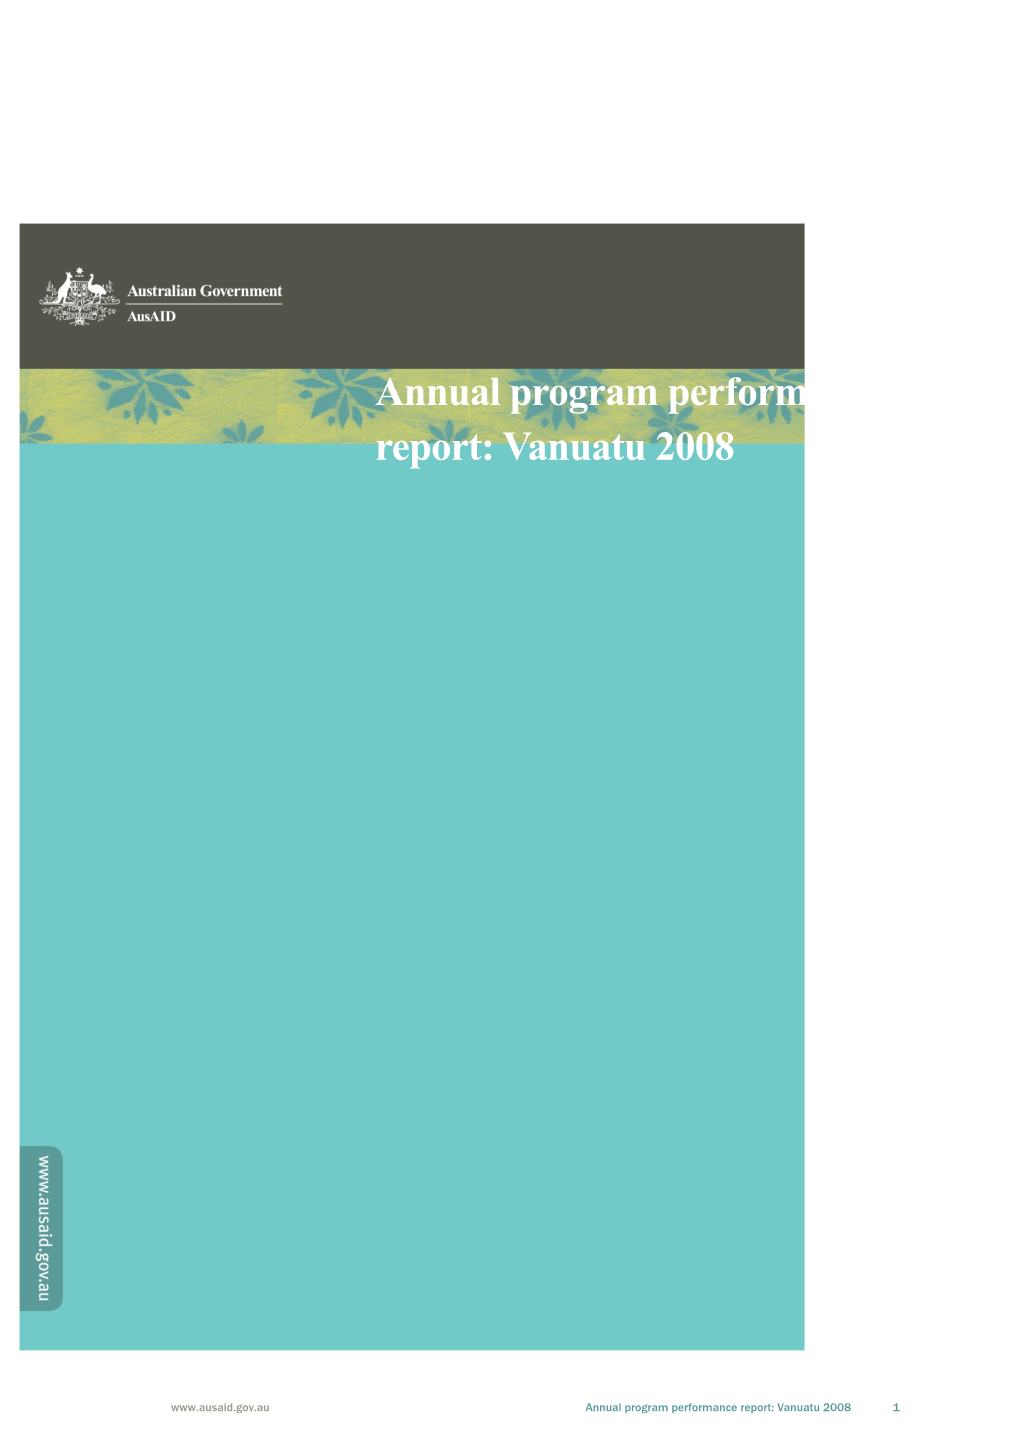 Annual Program Performance Report: Vanuatu 2008